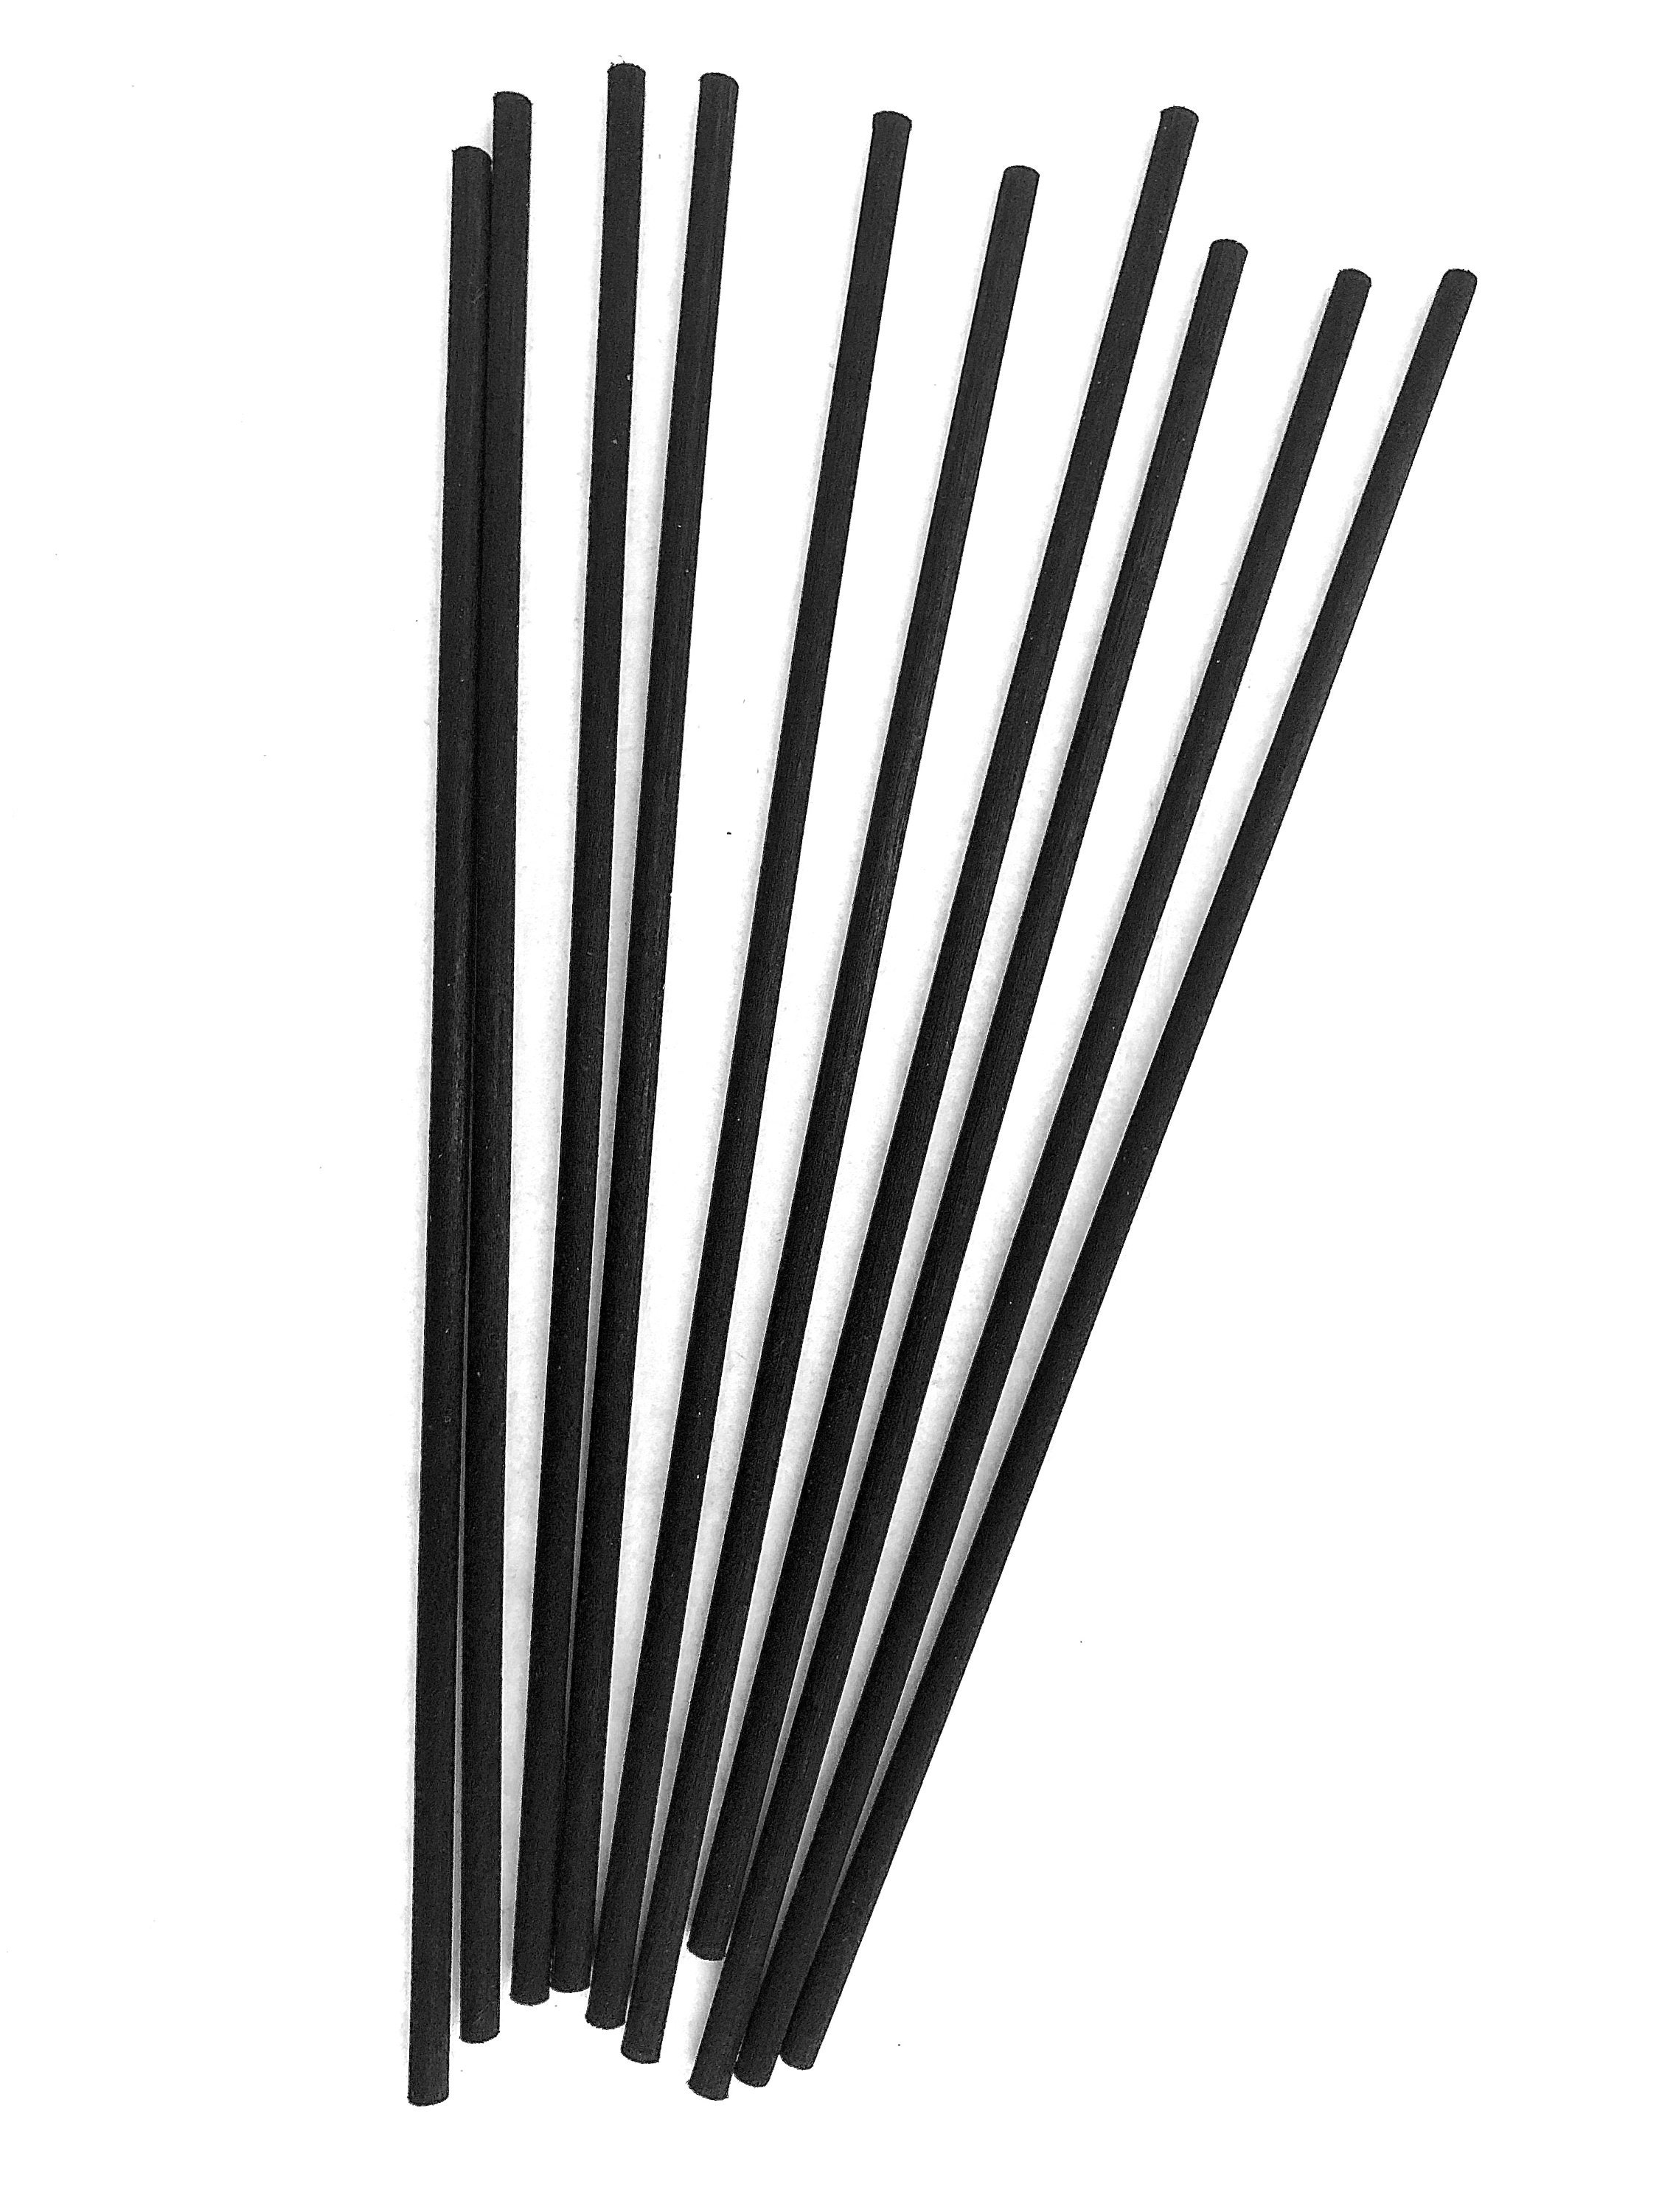 Bâtonnets de rechange en fibre noire, 10 pièces, diffuseur de